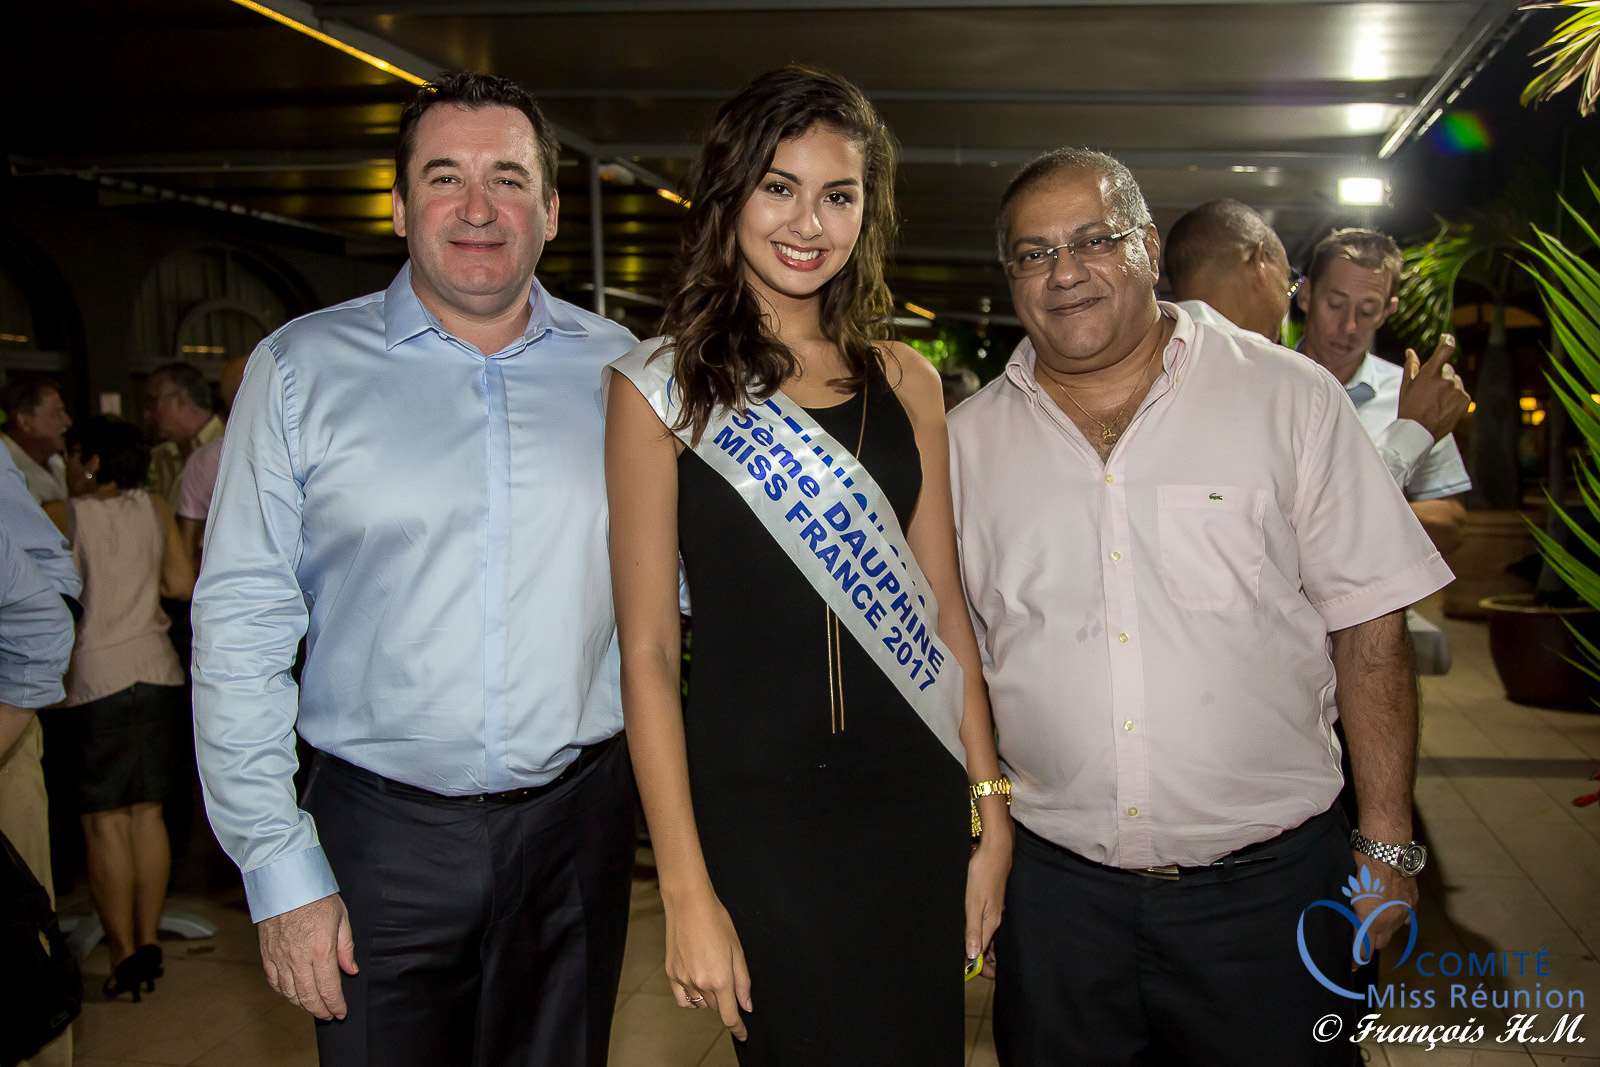 Pascal Turonnet, Ambre N'guyen, et Arzou Mahamadaly, directeur de la Sogecore/Opel, partenaire de Miss Réunion